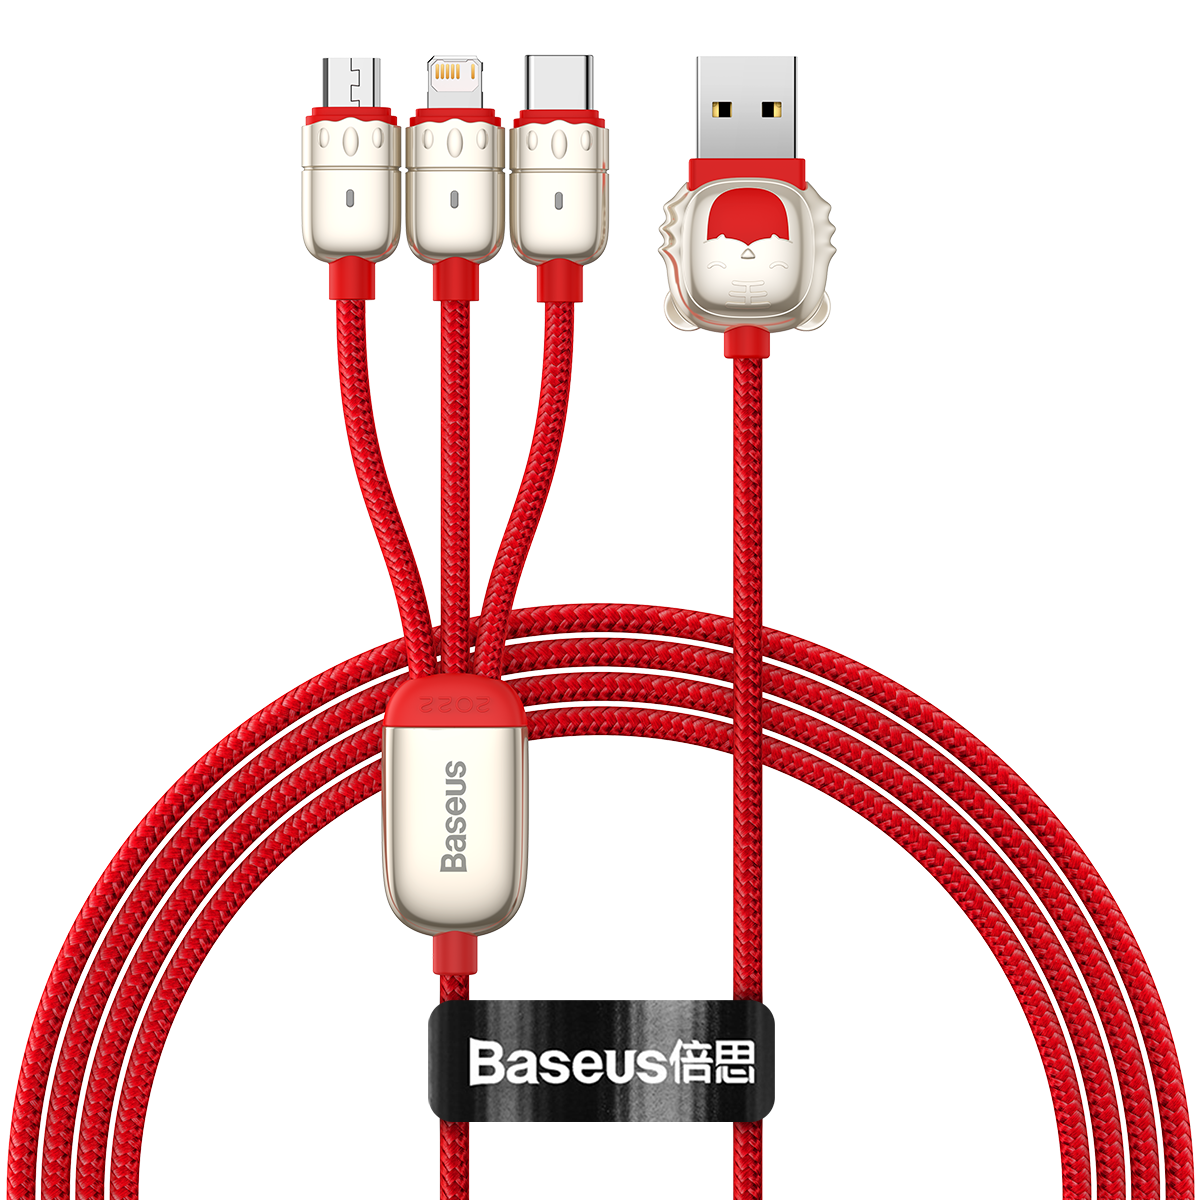 Baseus One Voor Drie USB Naar USB-C/Micro USB/iP Kabel 3.5A Snel Opladen Datatransmissie Snoer Lijn 